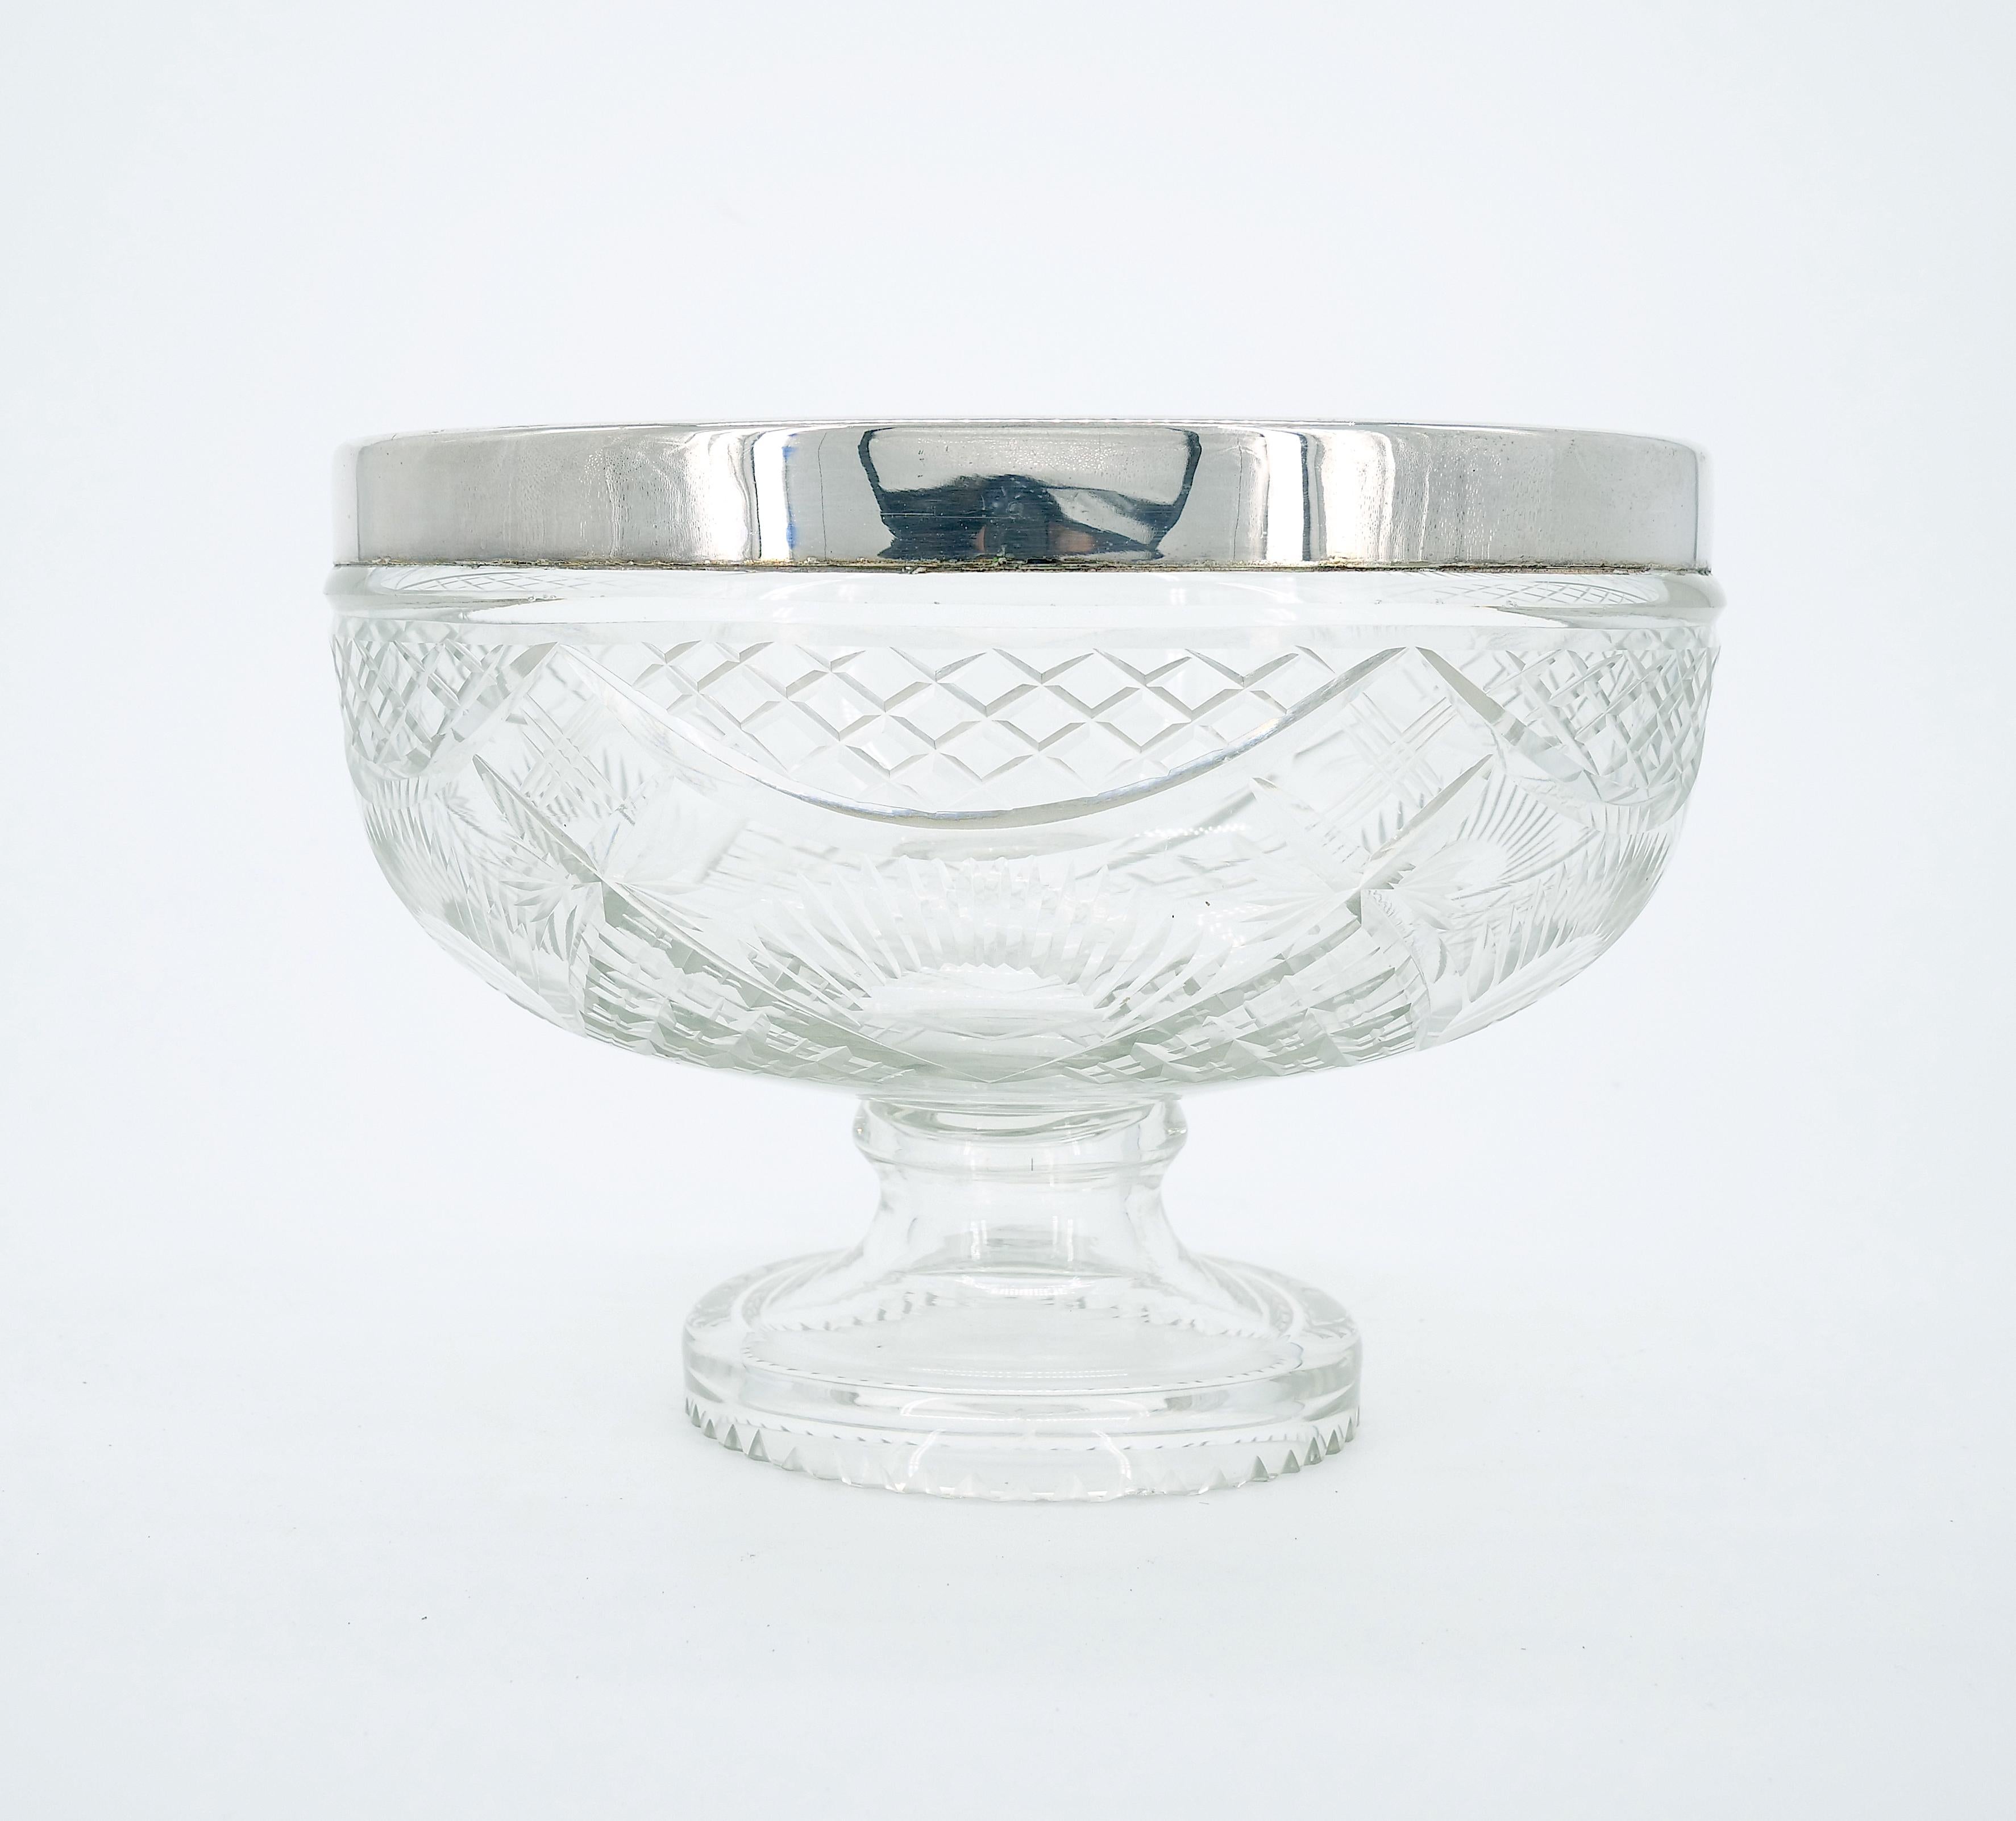 Mettez en valeur votre table avec ce bol de service en verre taillé à l'ancienne, en métal argenté, encadré par E.P.N.S., une combinaison étonnante d'artisanat et de design intemporel. L'extérieur du bol est orné de détails complexes taillés au